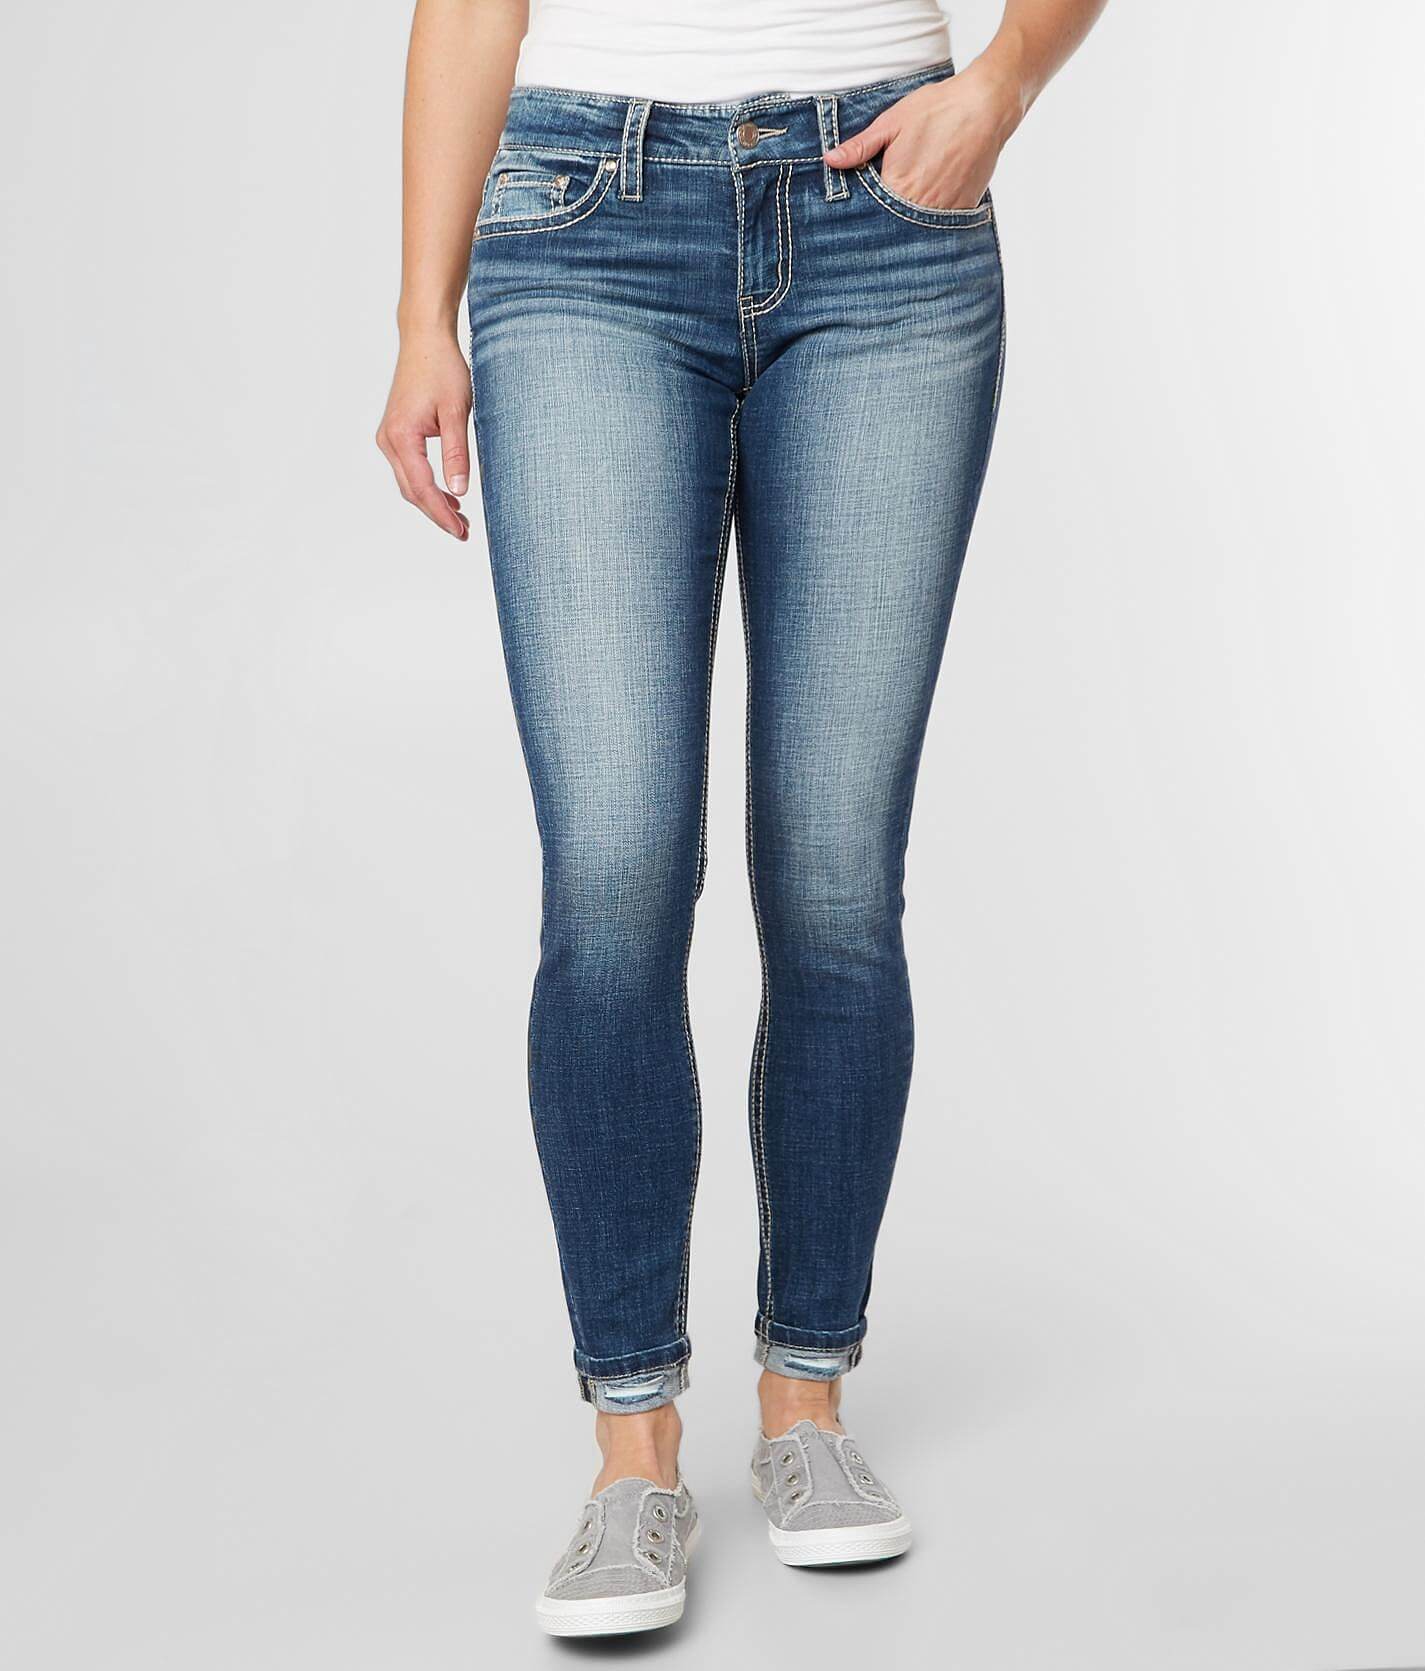 daytrip virgo jeans